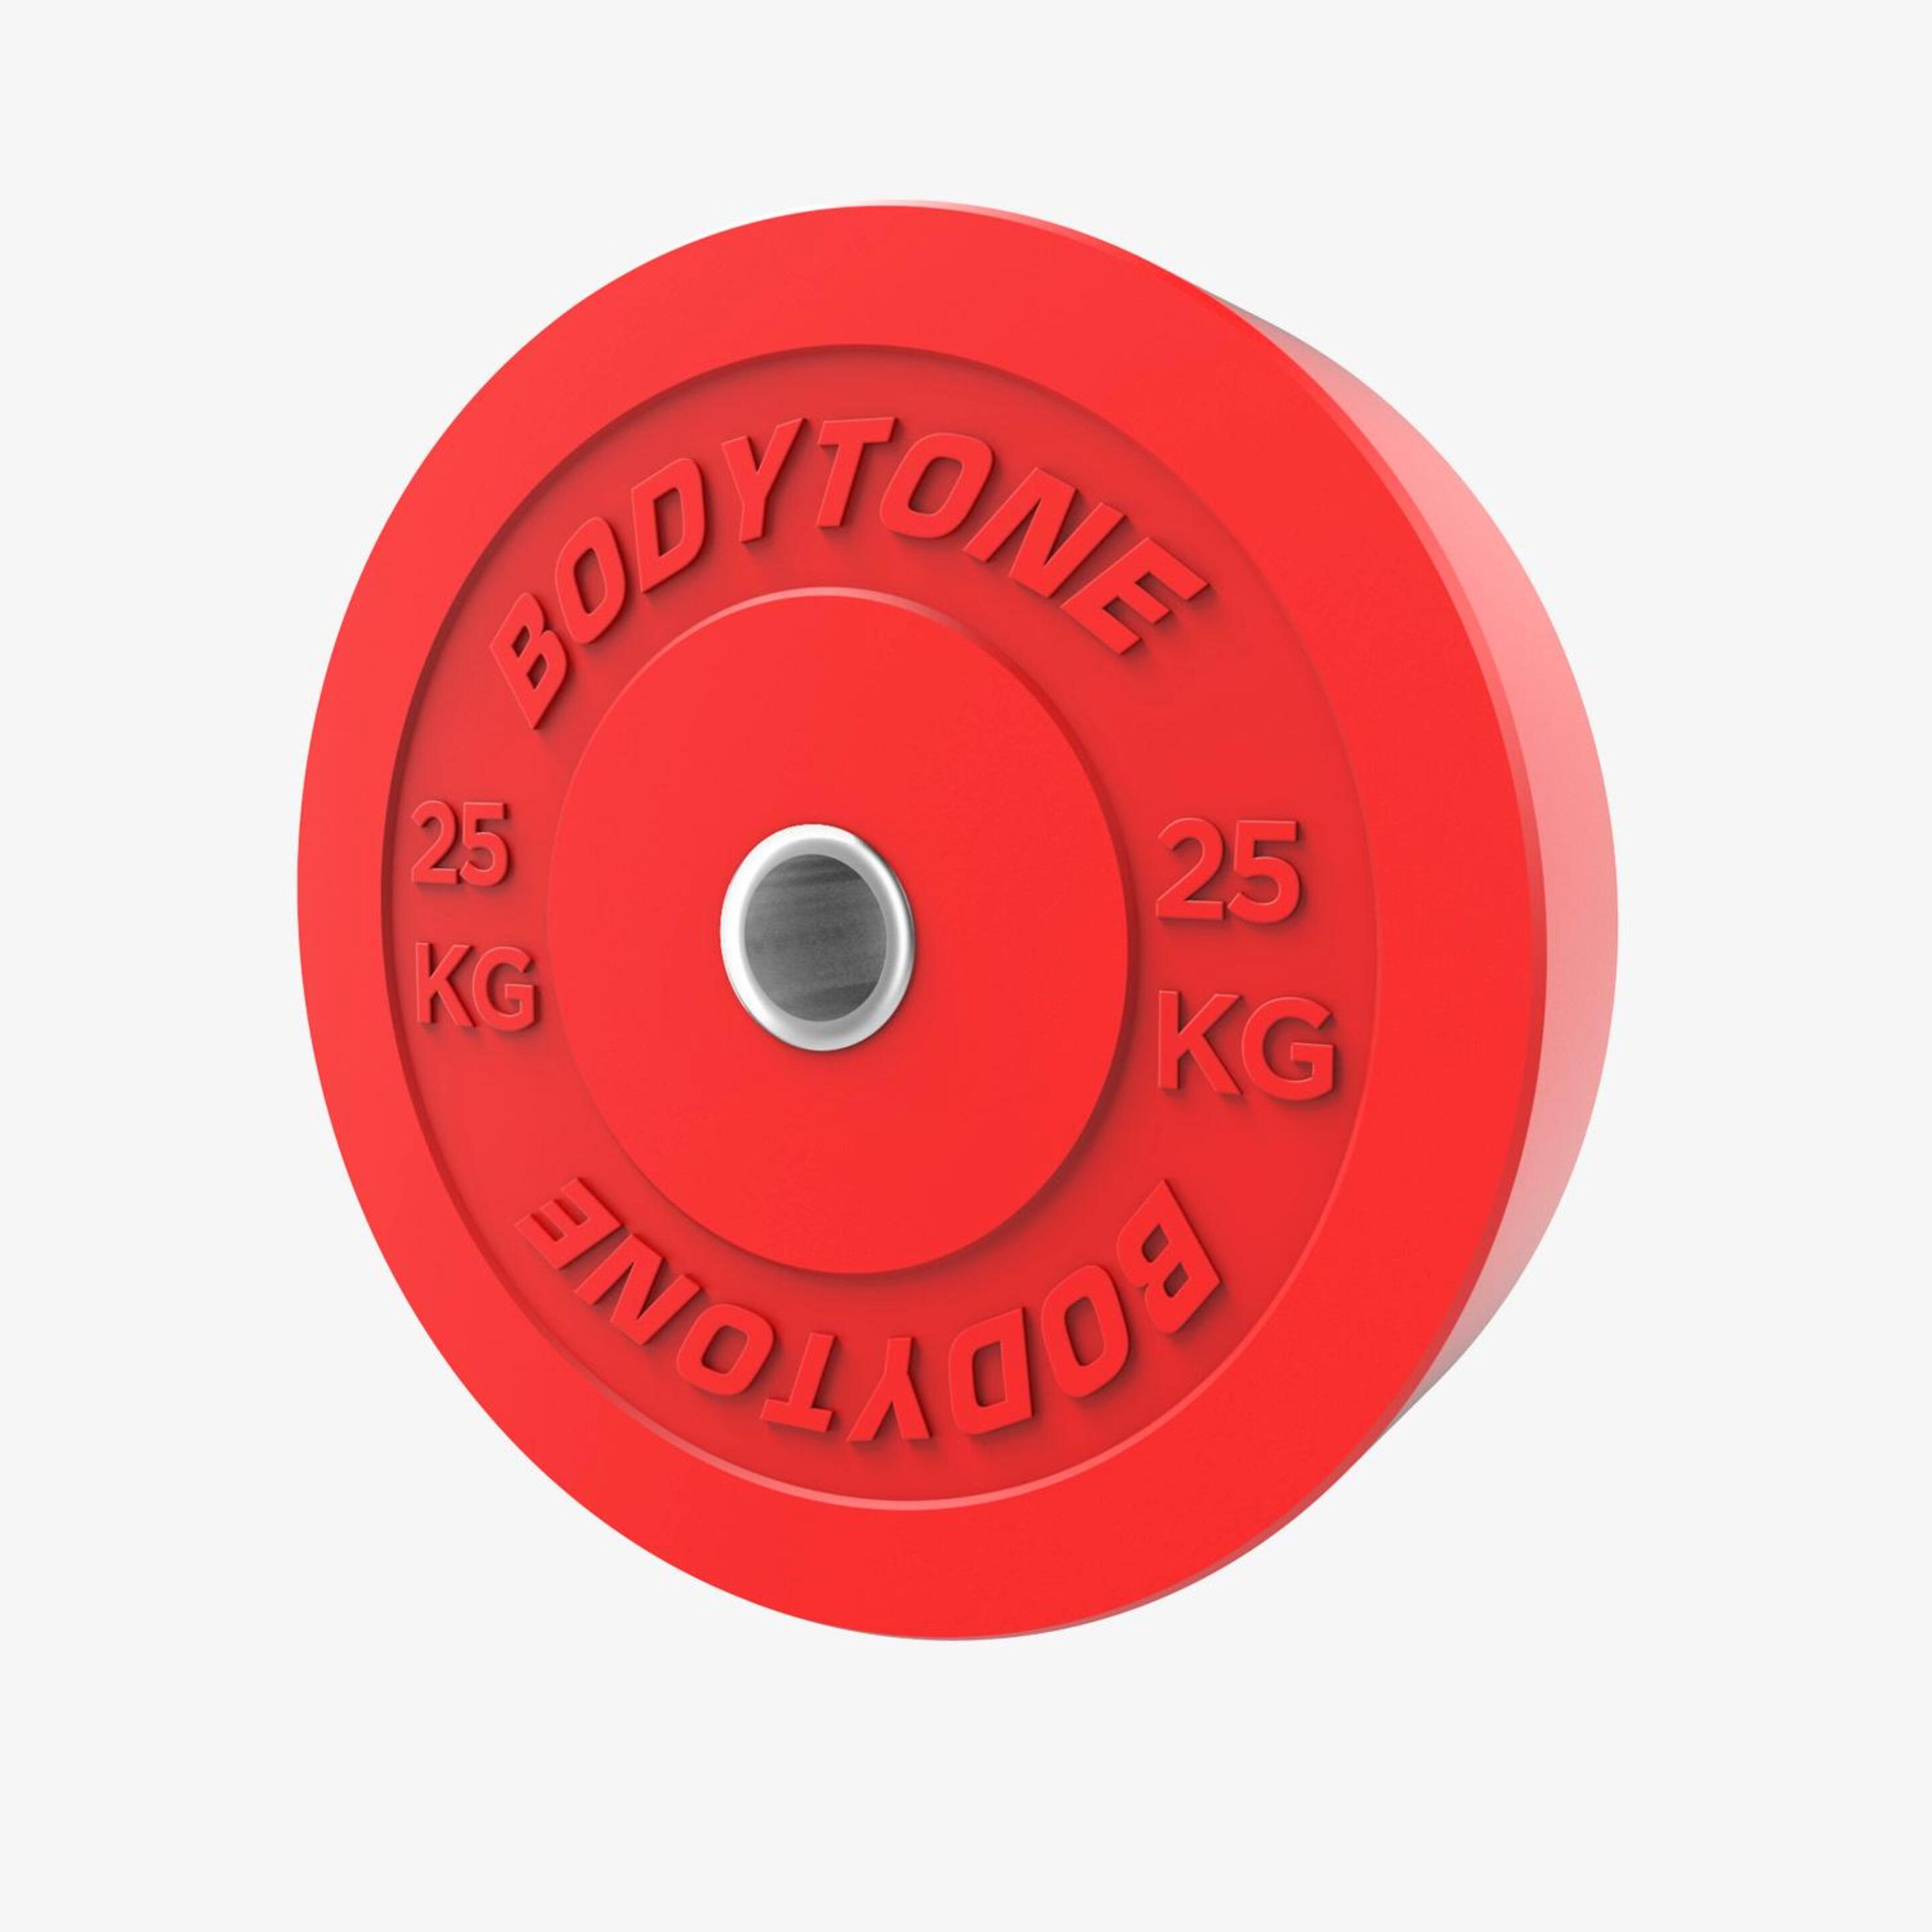 Disco 25 Kg Bodytone - rojo - 